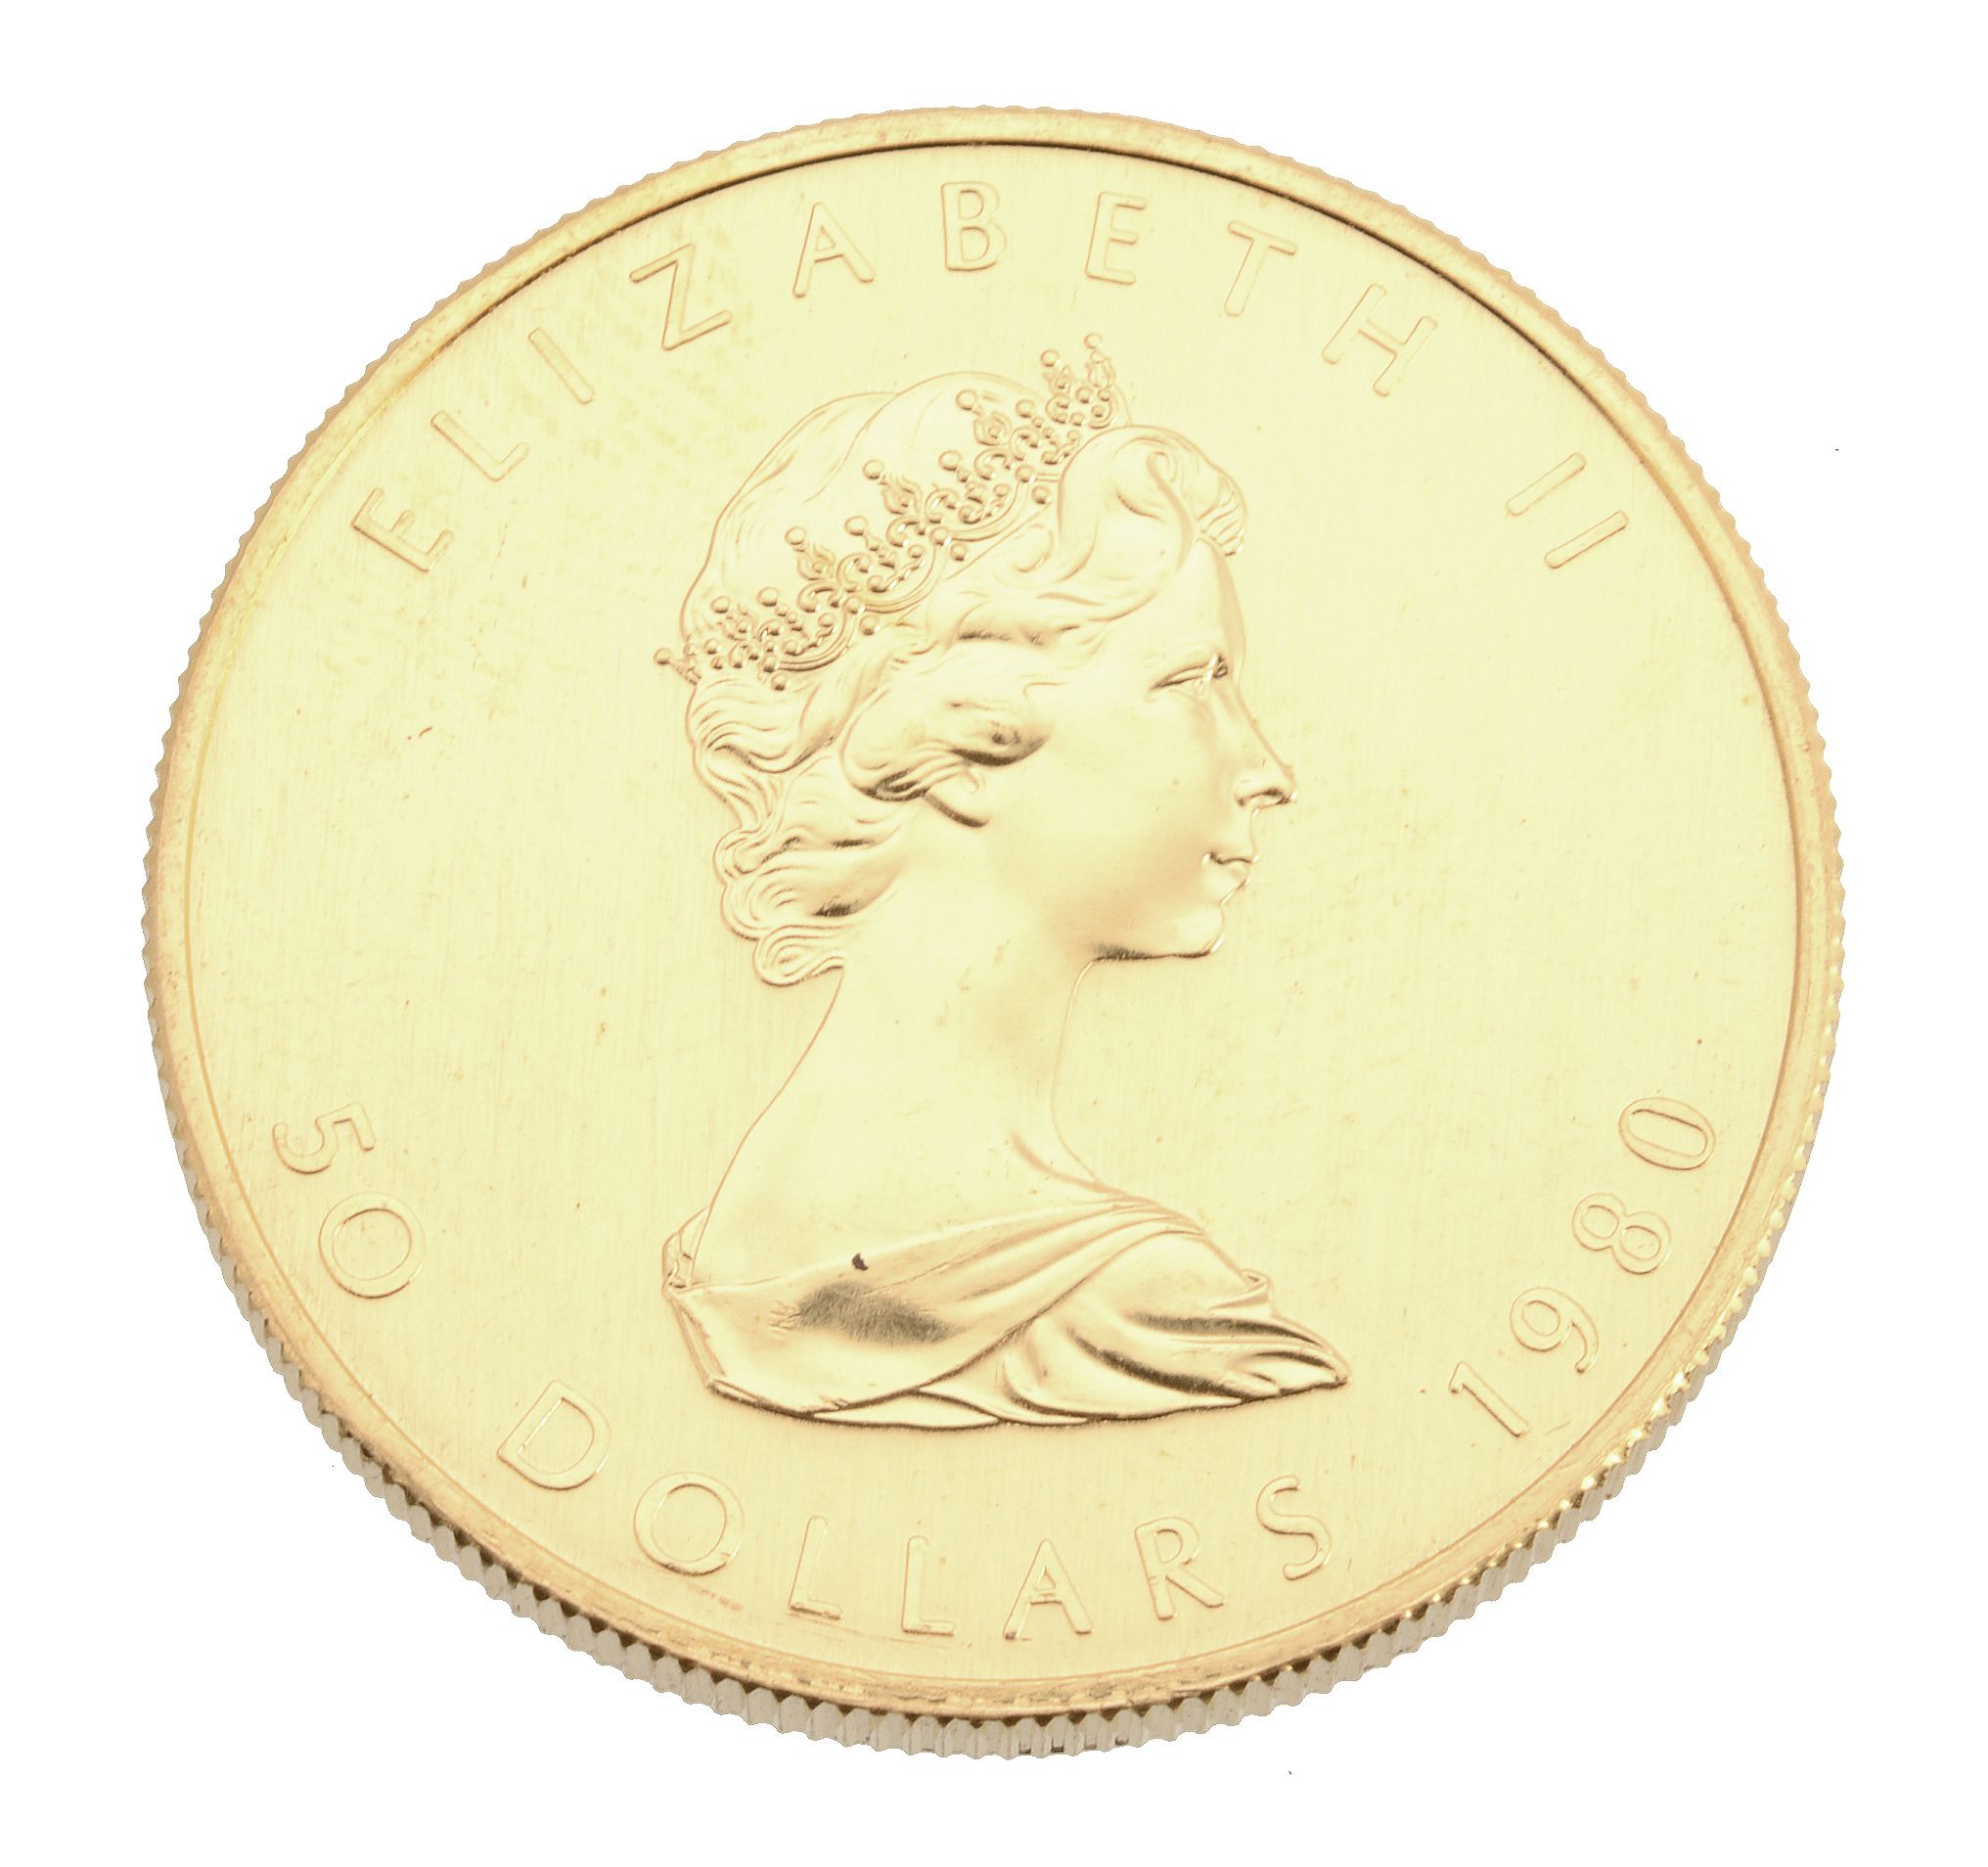 Canada, Elizabeth II, gold 50-Dollars 1986. Extremely fine